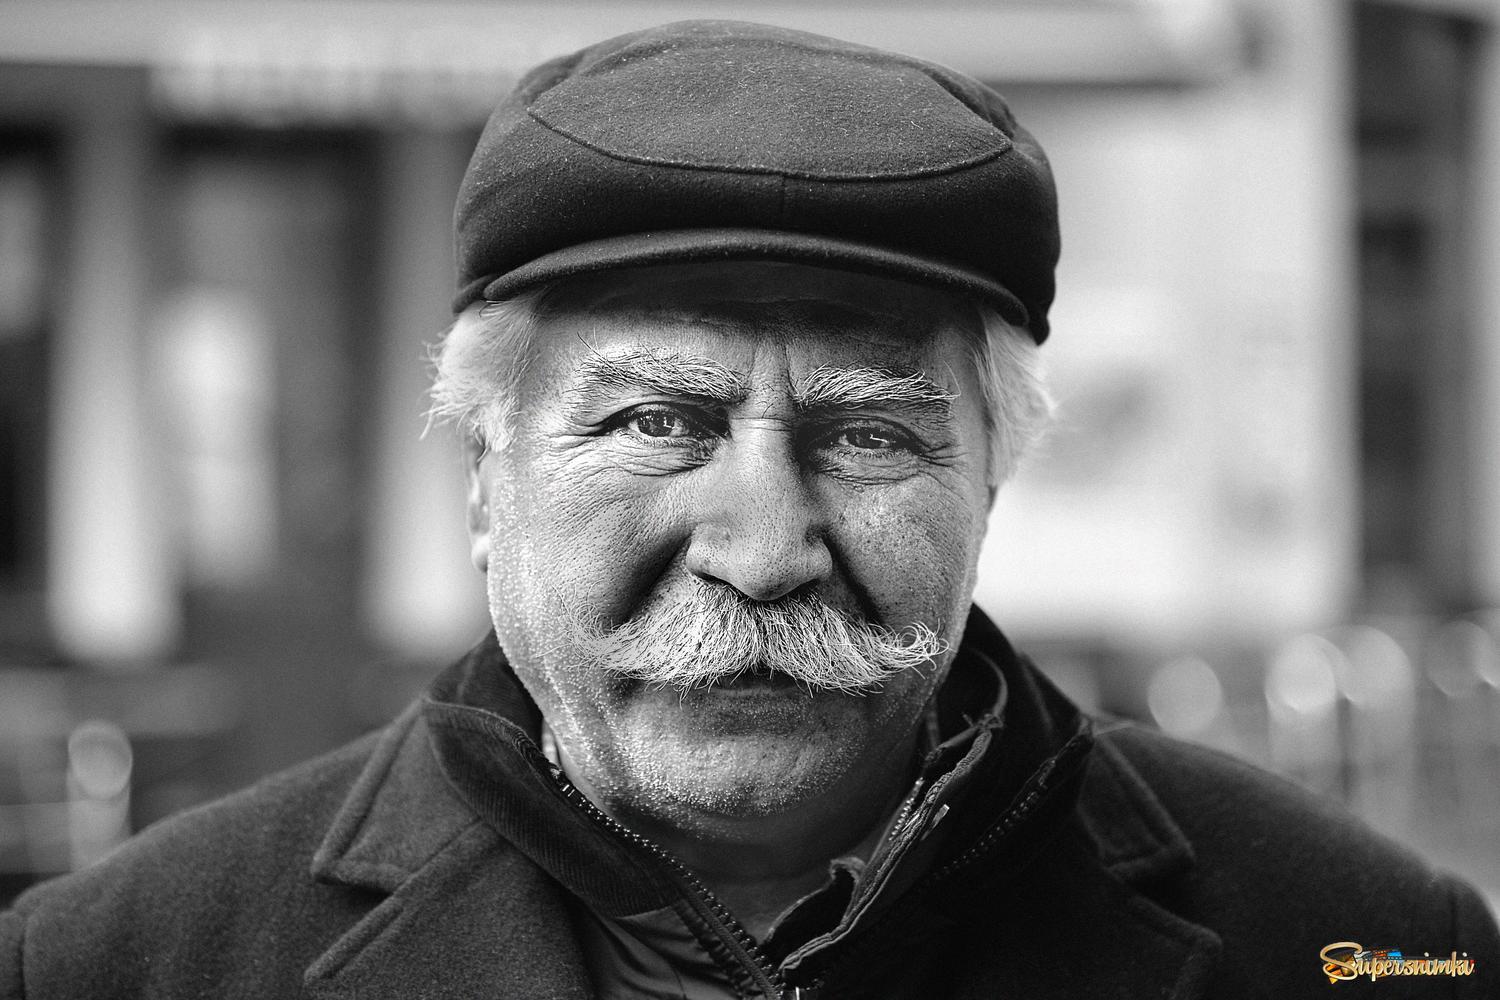 Old Turkish man. . 